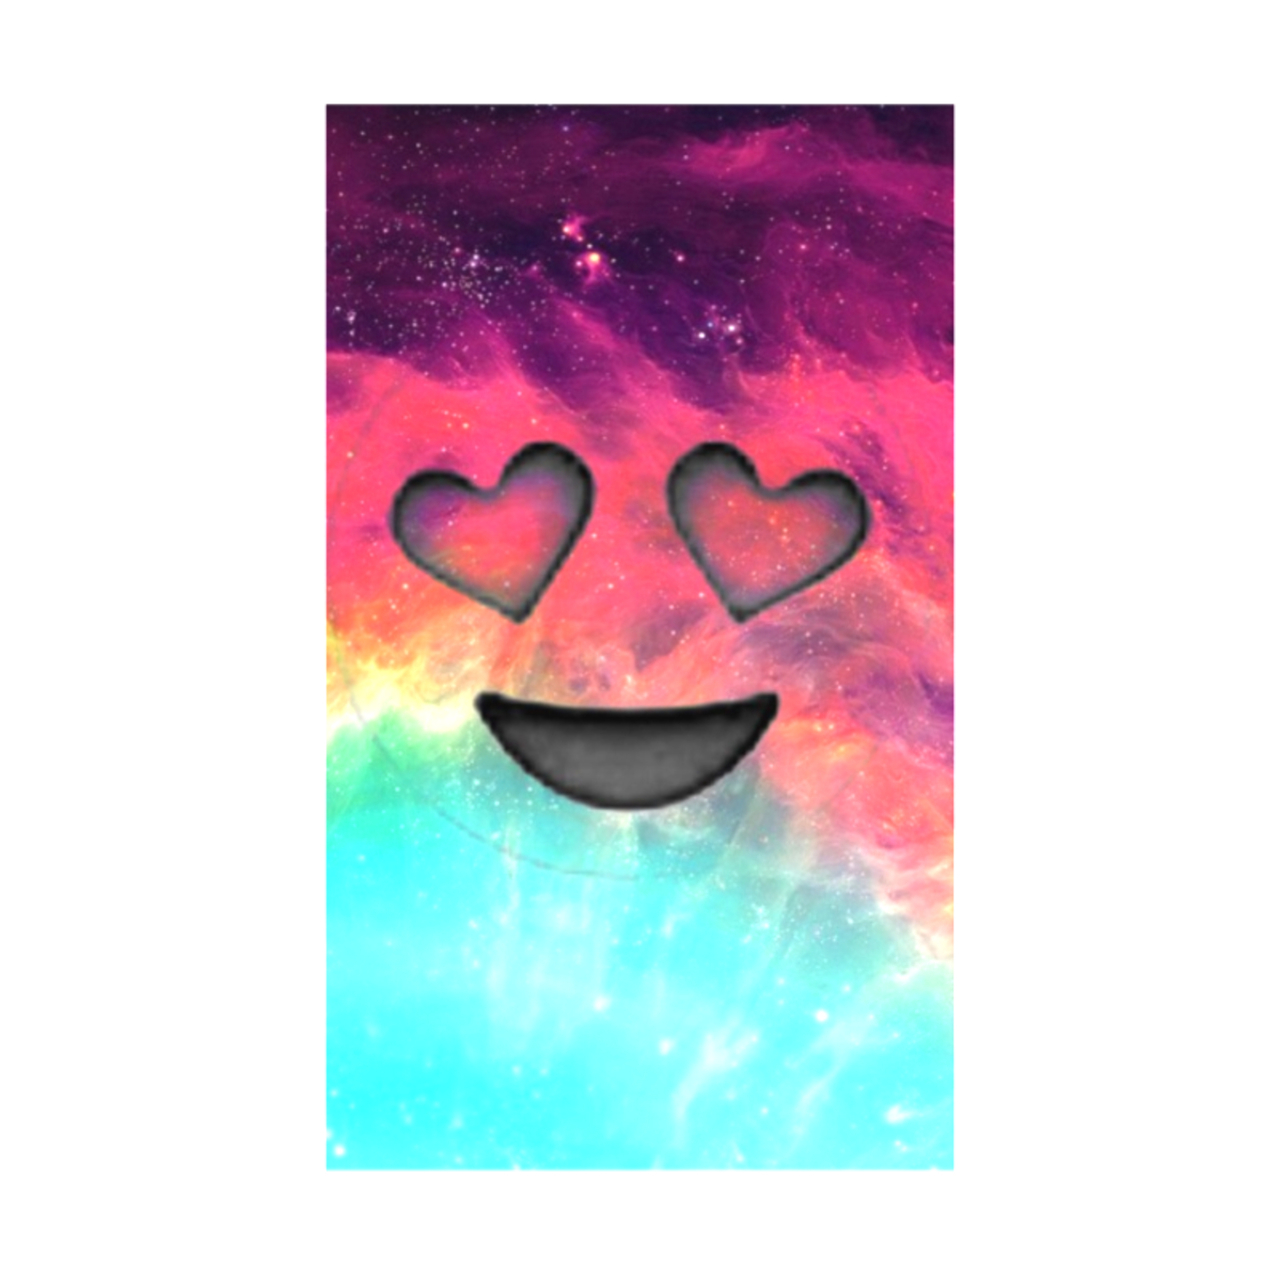 Background, Emoji And Galaxy - Galaxy Heart Eyes Emoji - 1280x1280 Wallpaper  